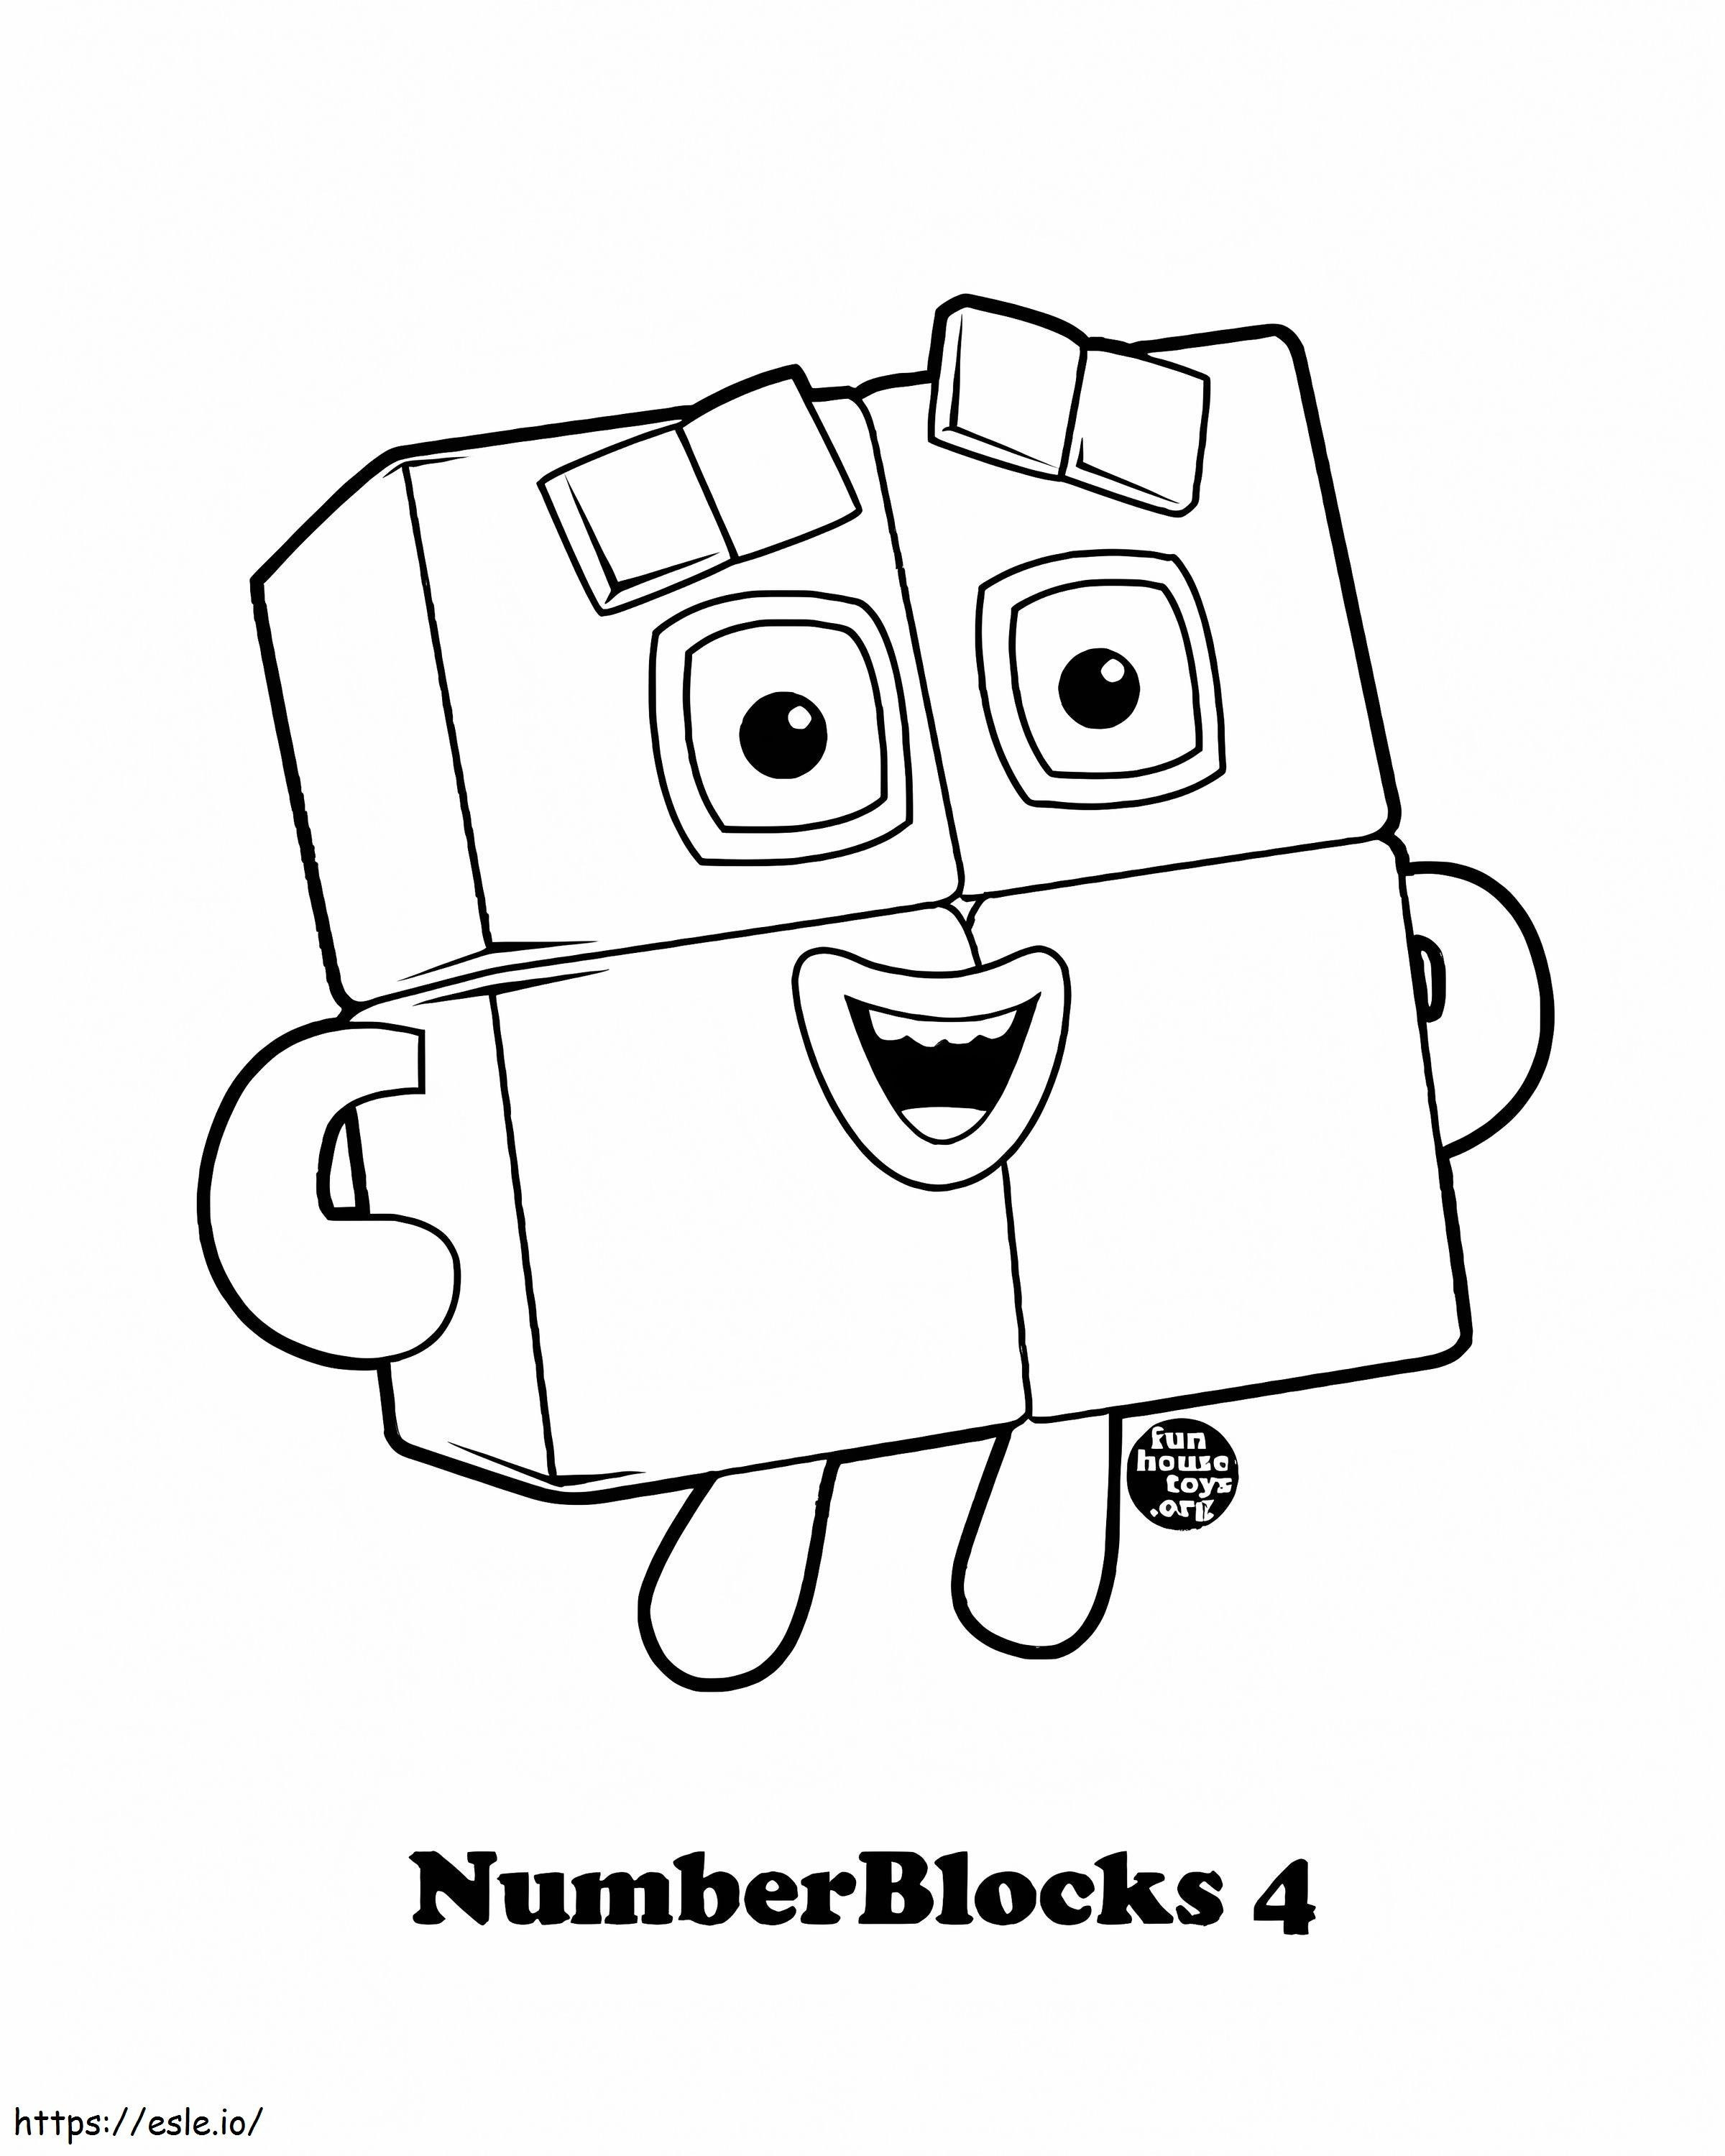 Sayı Blokları 4 boyama